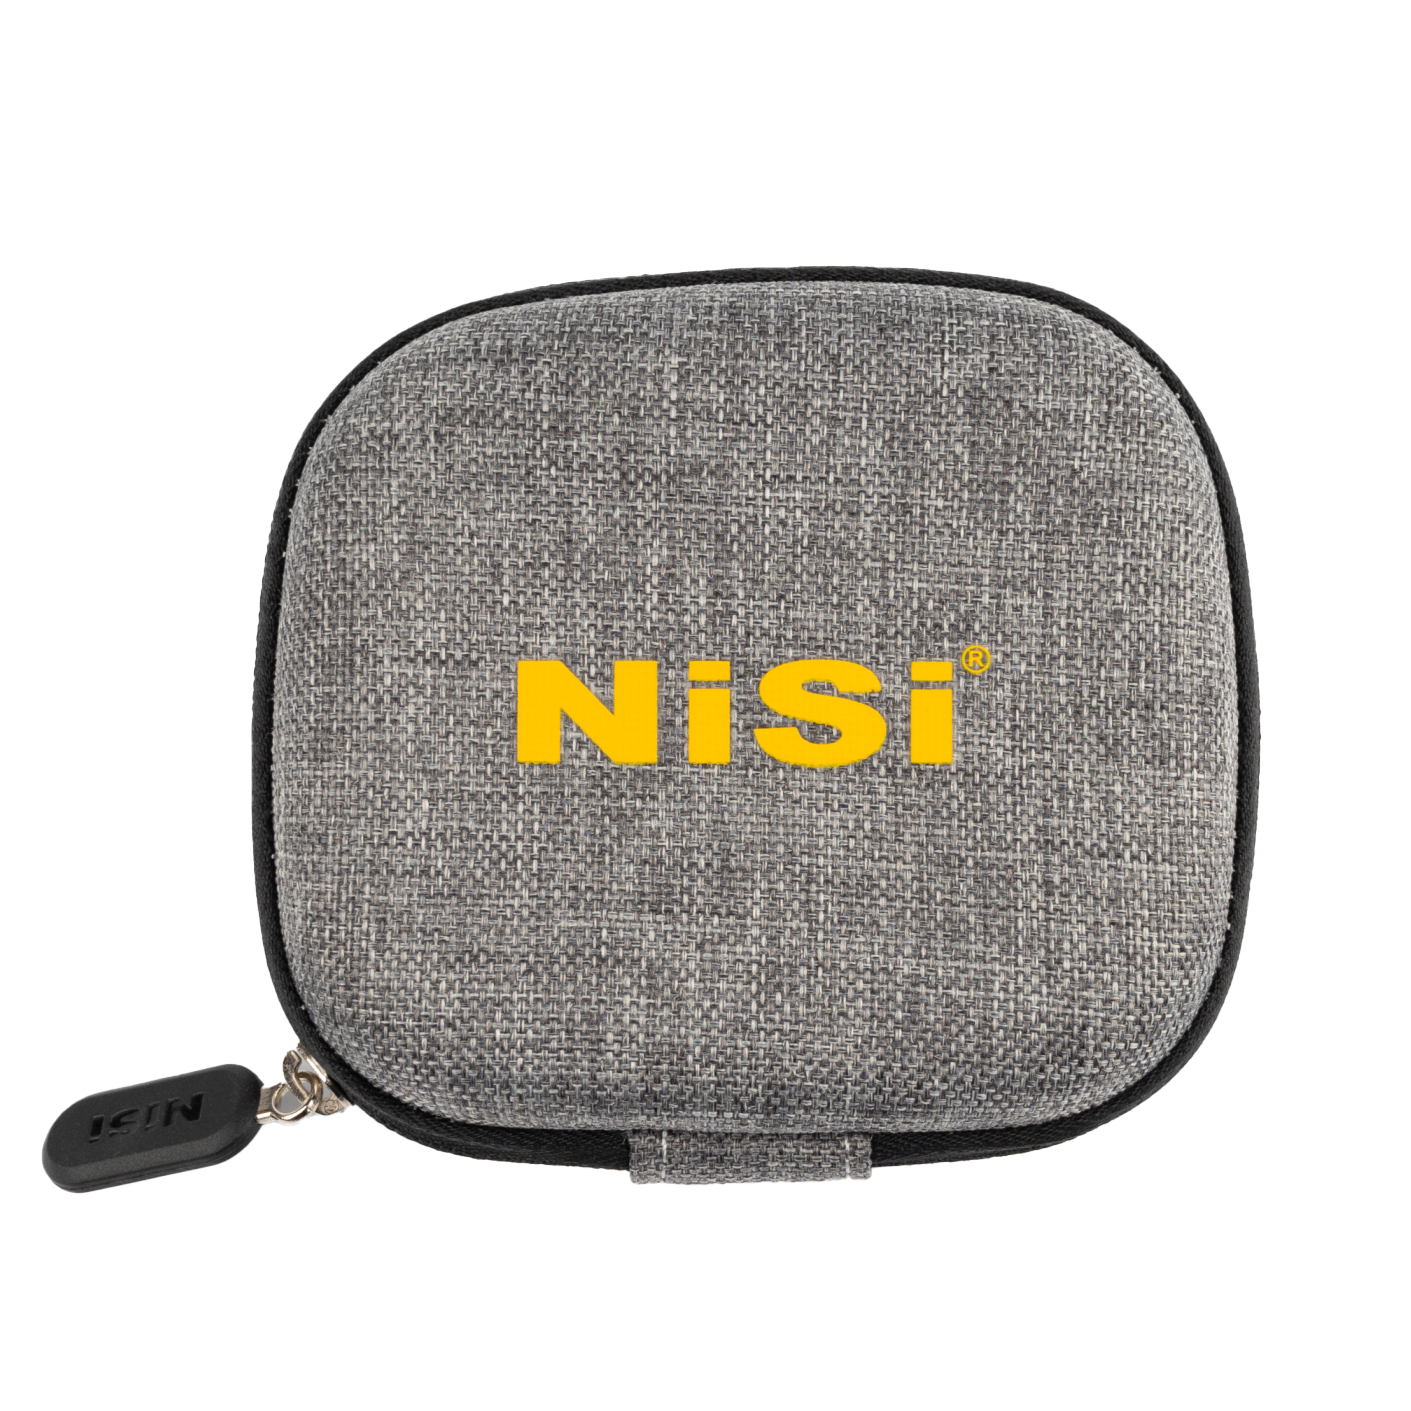 NiSi Filtertasche für Kompaktfilter Ansicht frontal